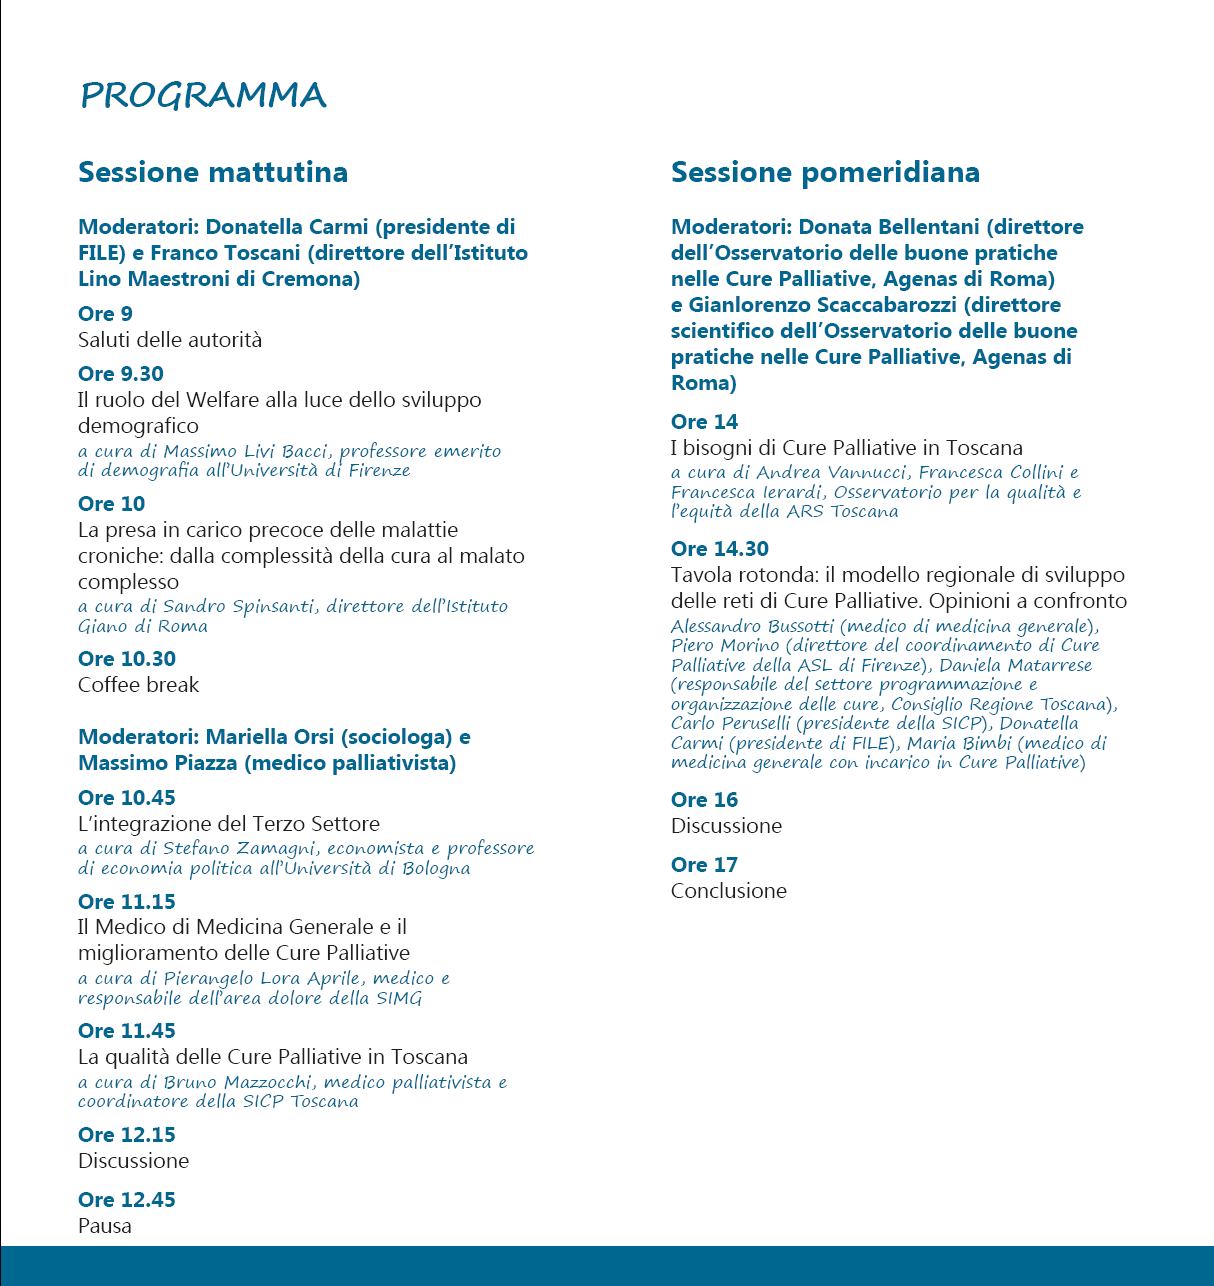 Lo sviluppo della rete di cure palliative in Toscana